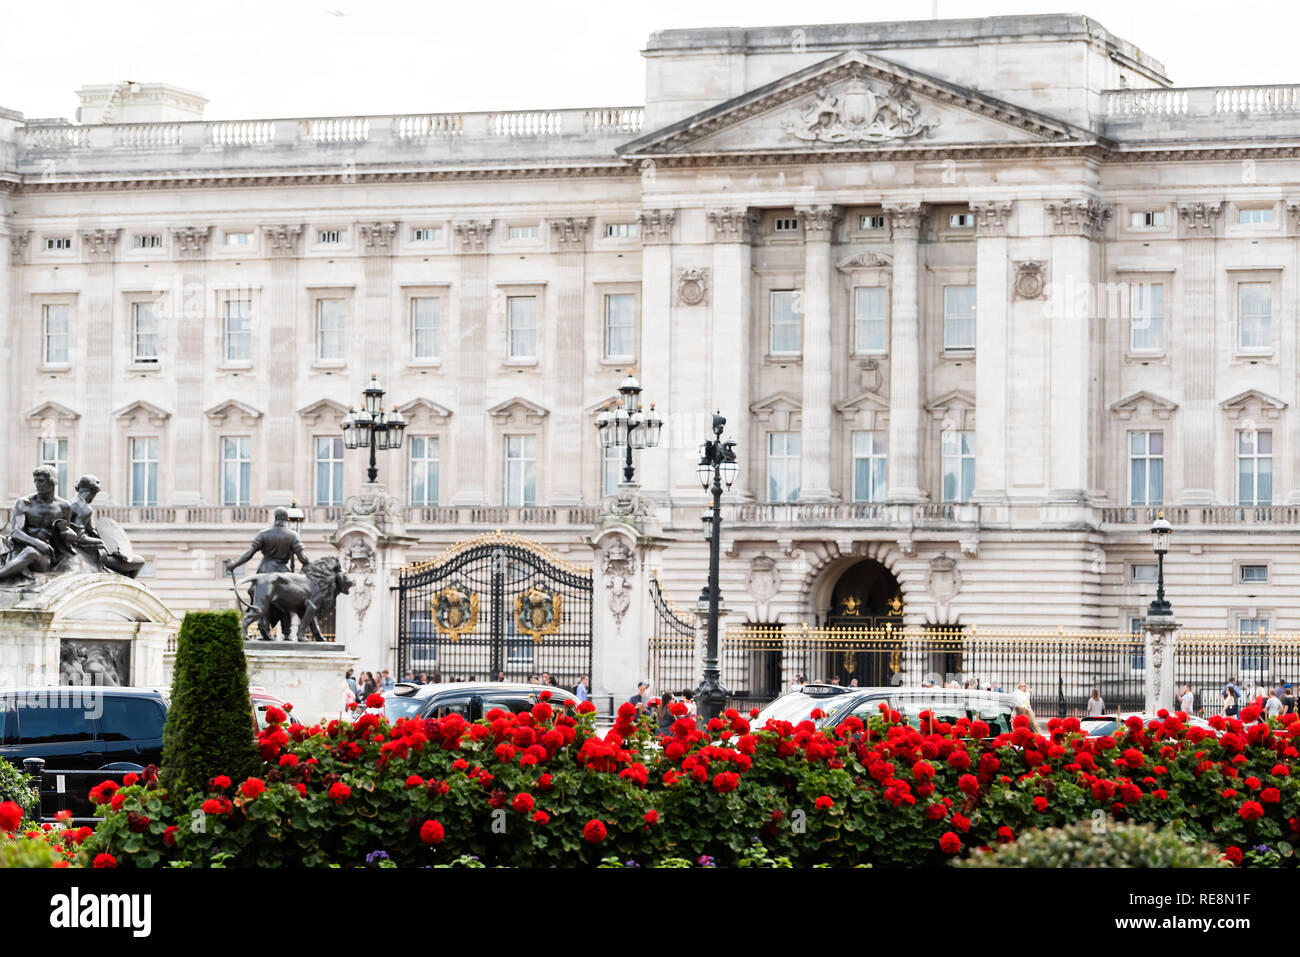 Londres, Royaume-Uni - 21 juin 2018 : le palais de Buckingham clôture barrière architecture bâtiment au cours de journée d'été avec des voitures dans le trafic et de fleurs rose rouge g paysagers Banque D'Images